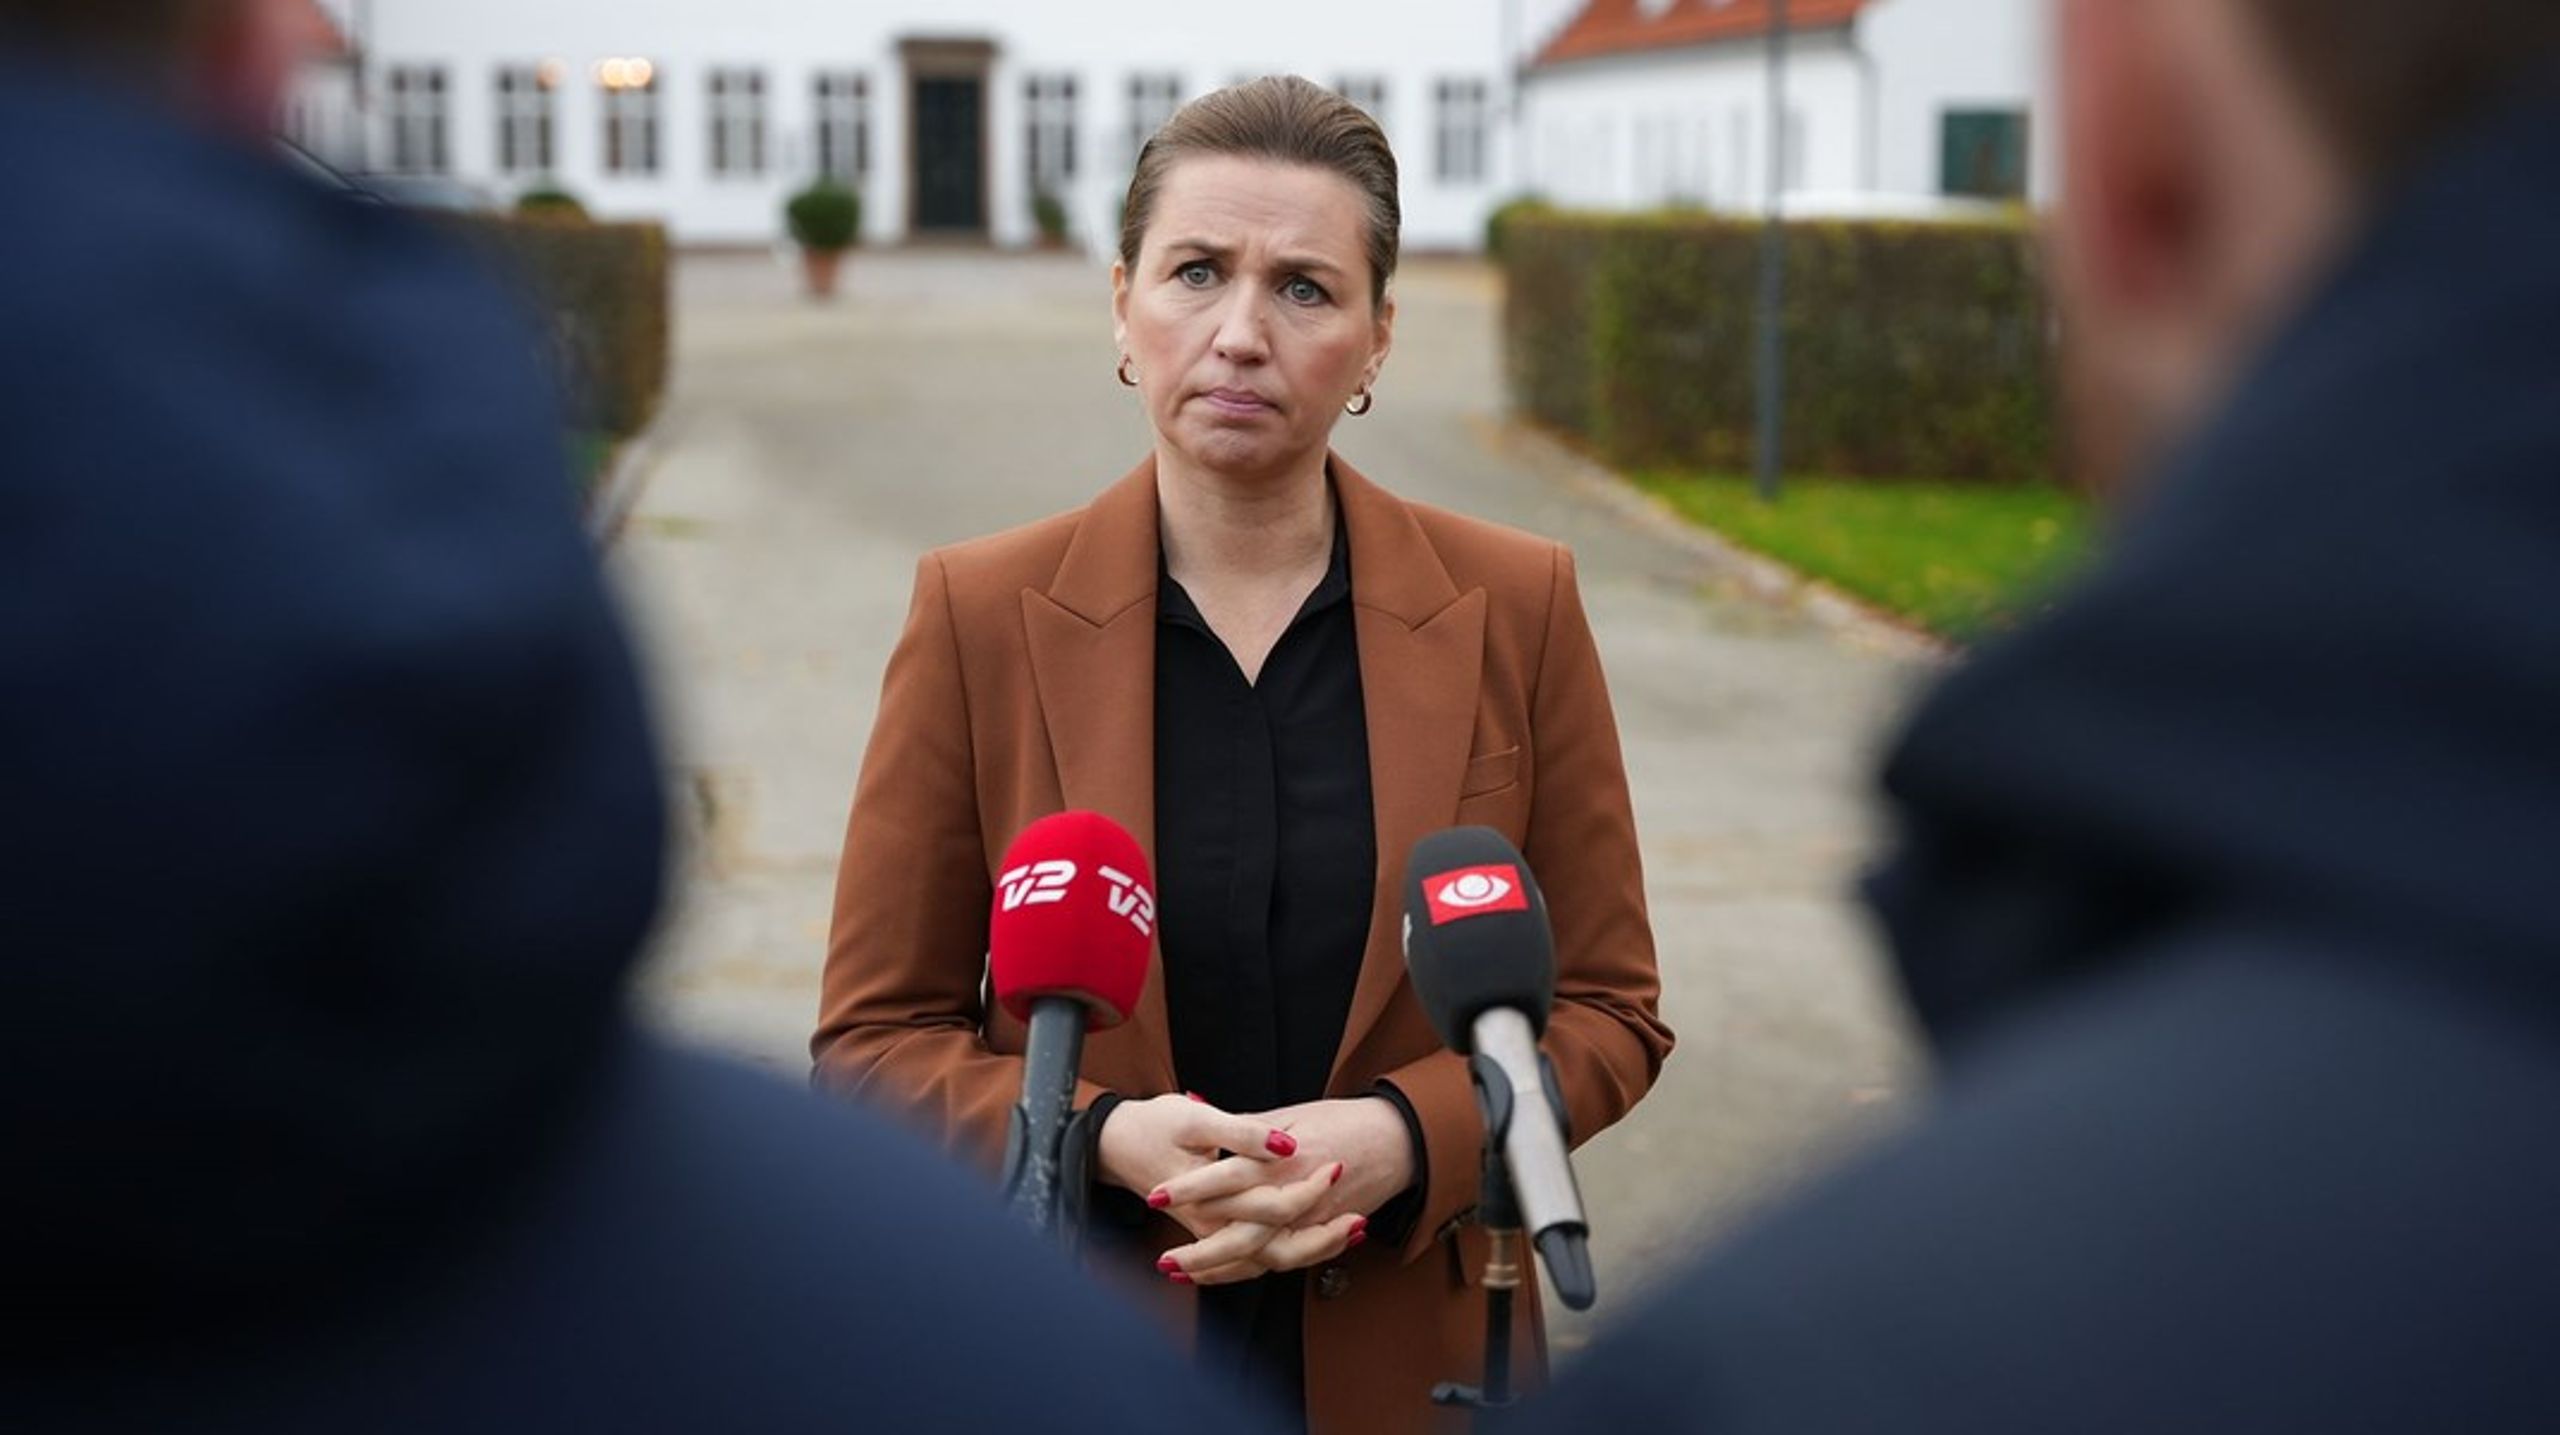 Socialdemokratiets Anker Jørgensen og Mette Frederiksen har stået i spidsen for Danmarks længste regeringsforhandlinger.